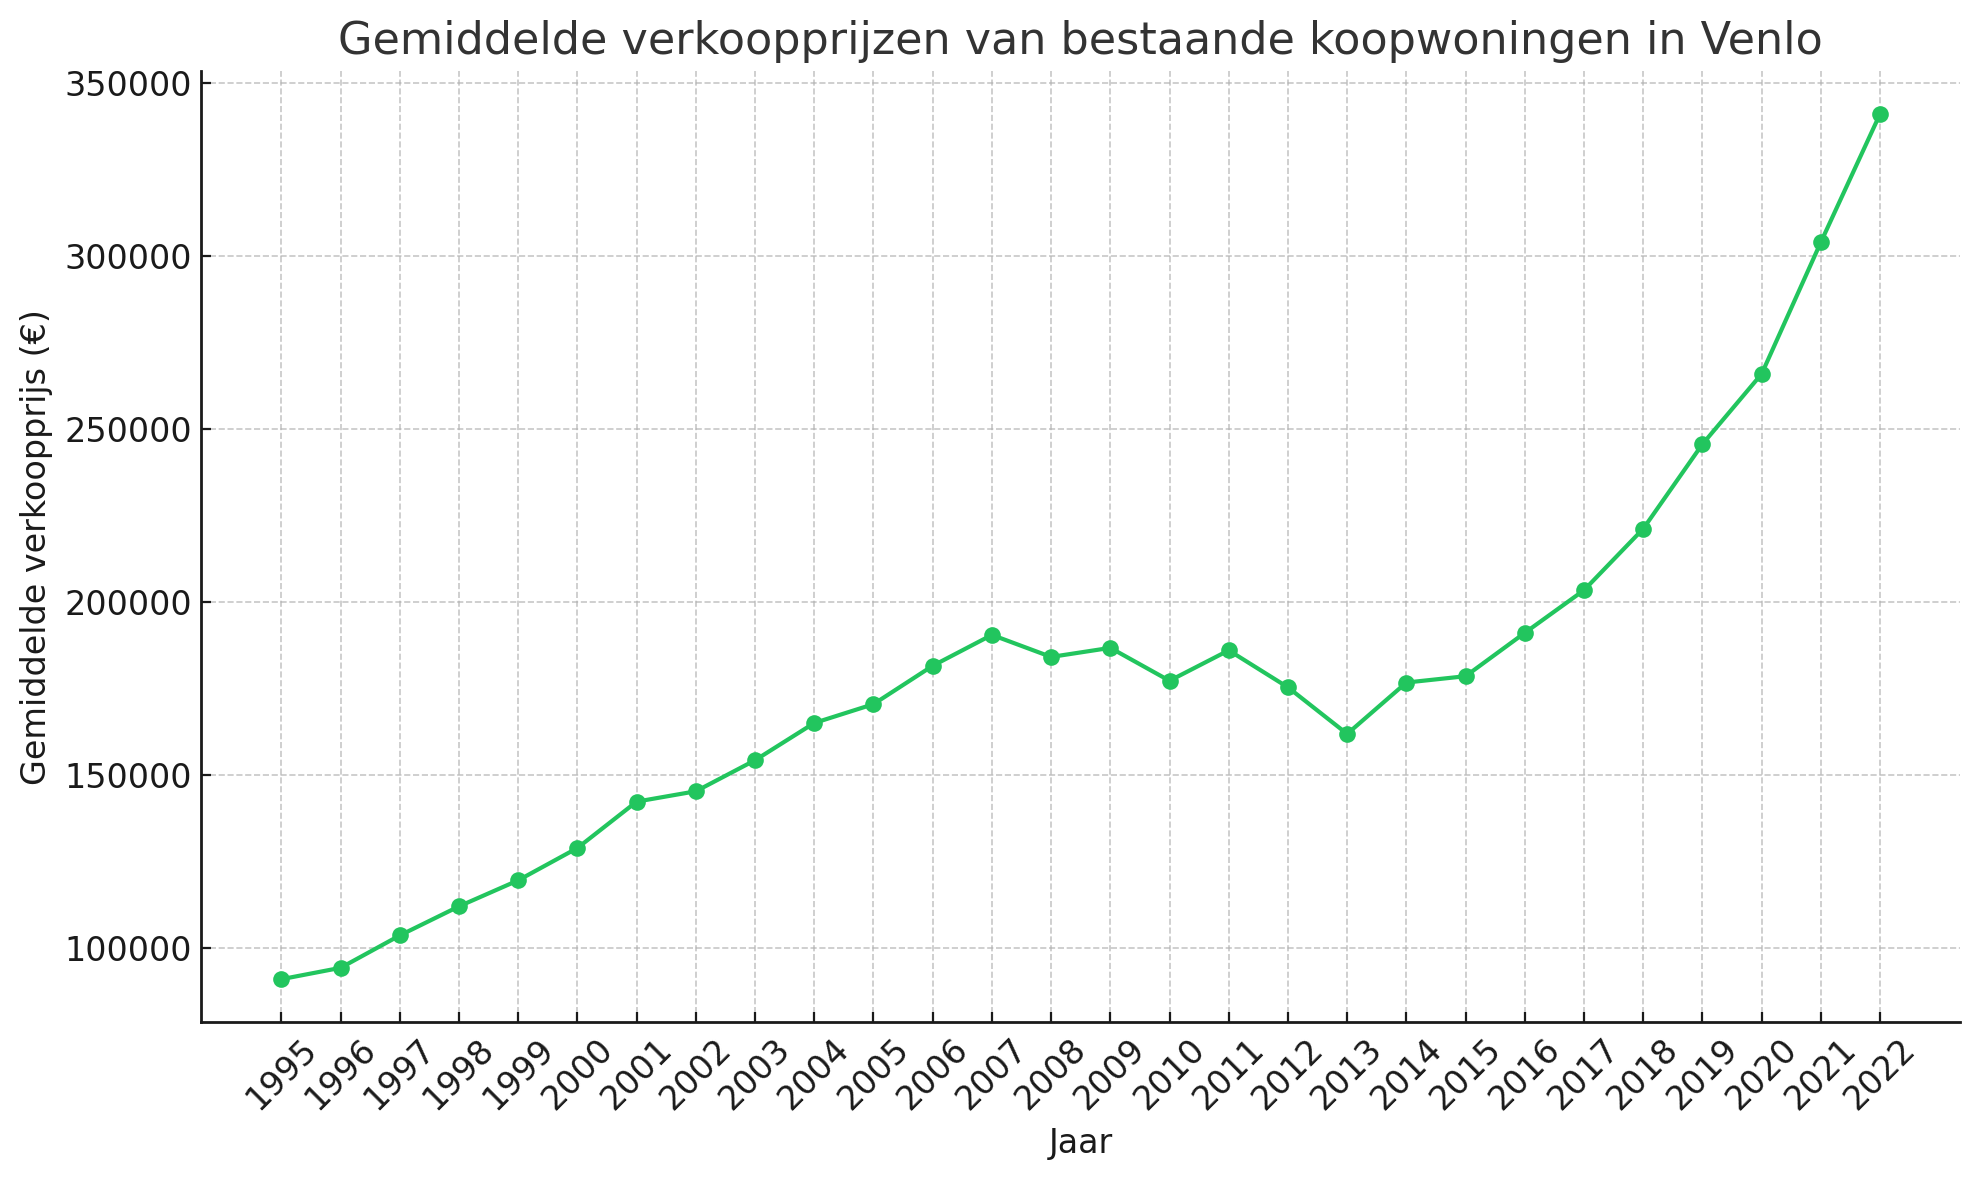 Gemiddelde verkoopprijzen van bestaande koopwoningen in Venlo